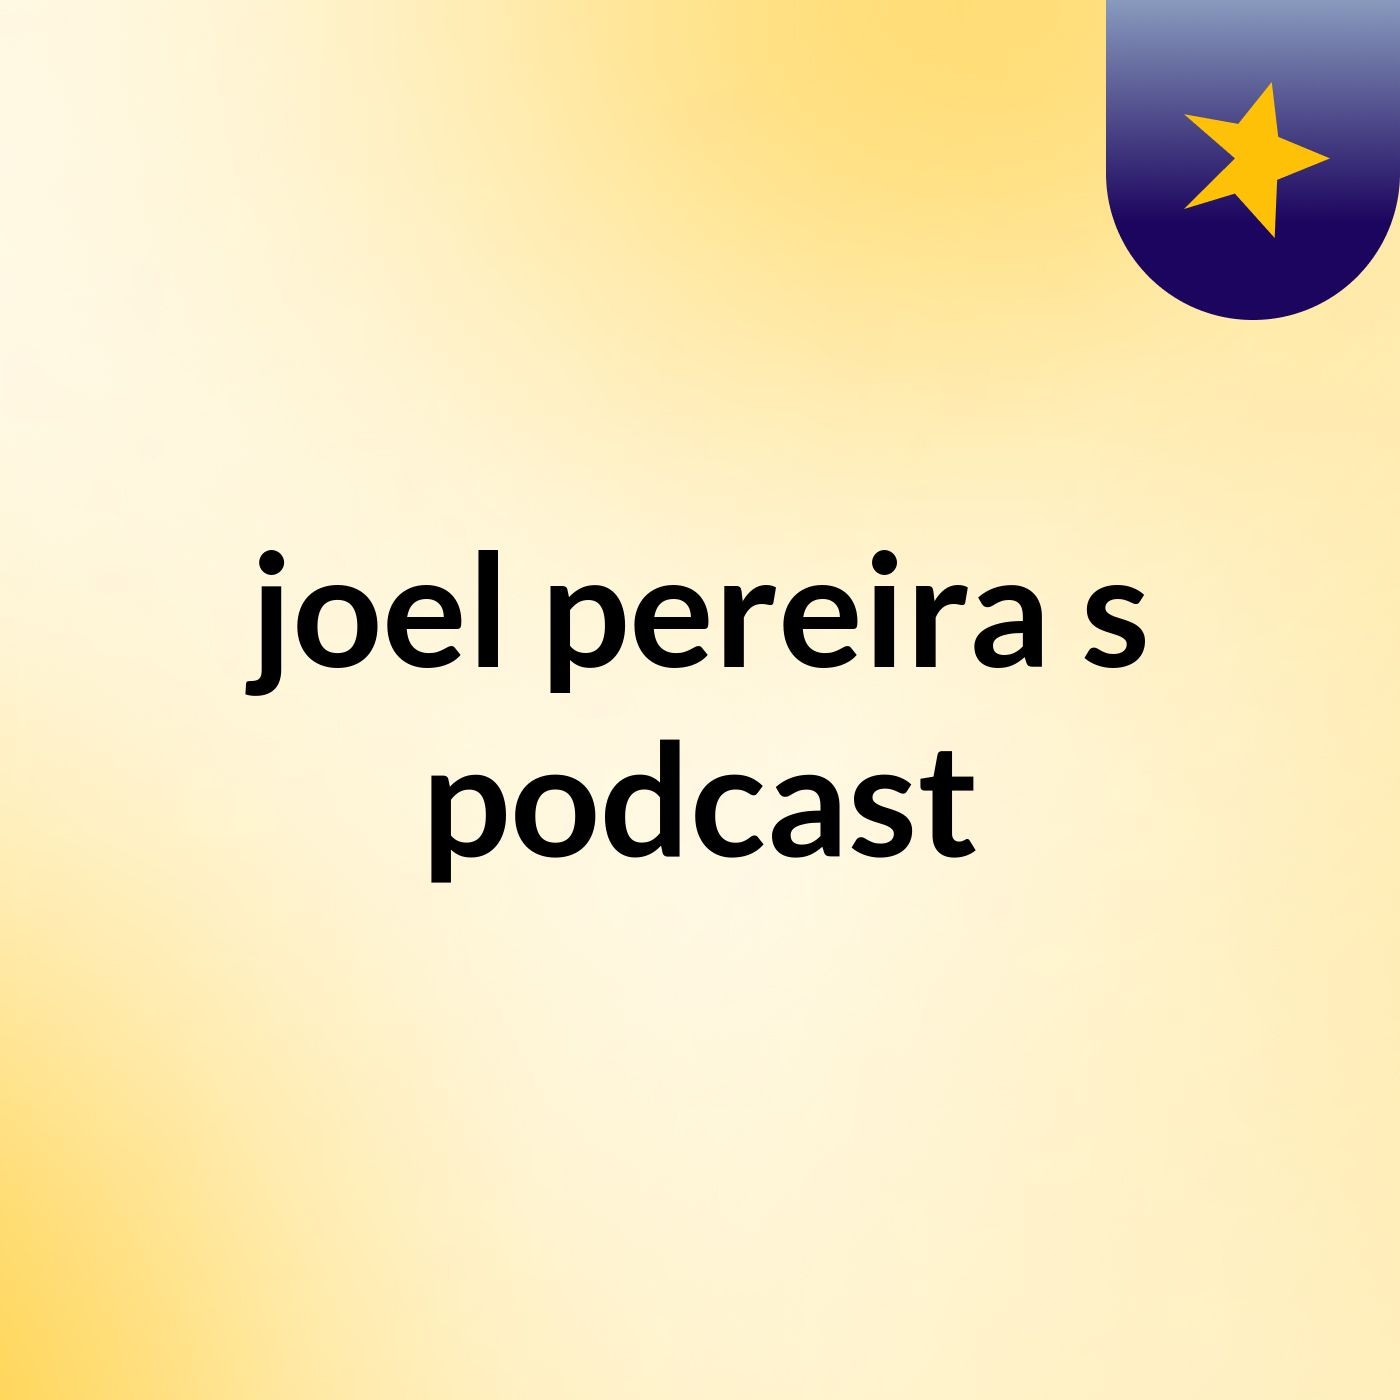 joel pereira's podcast